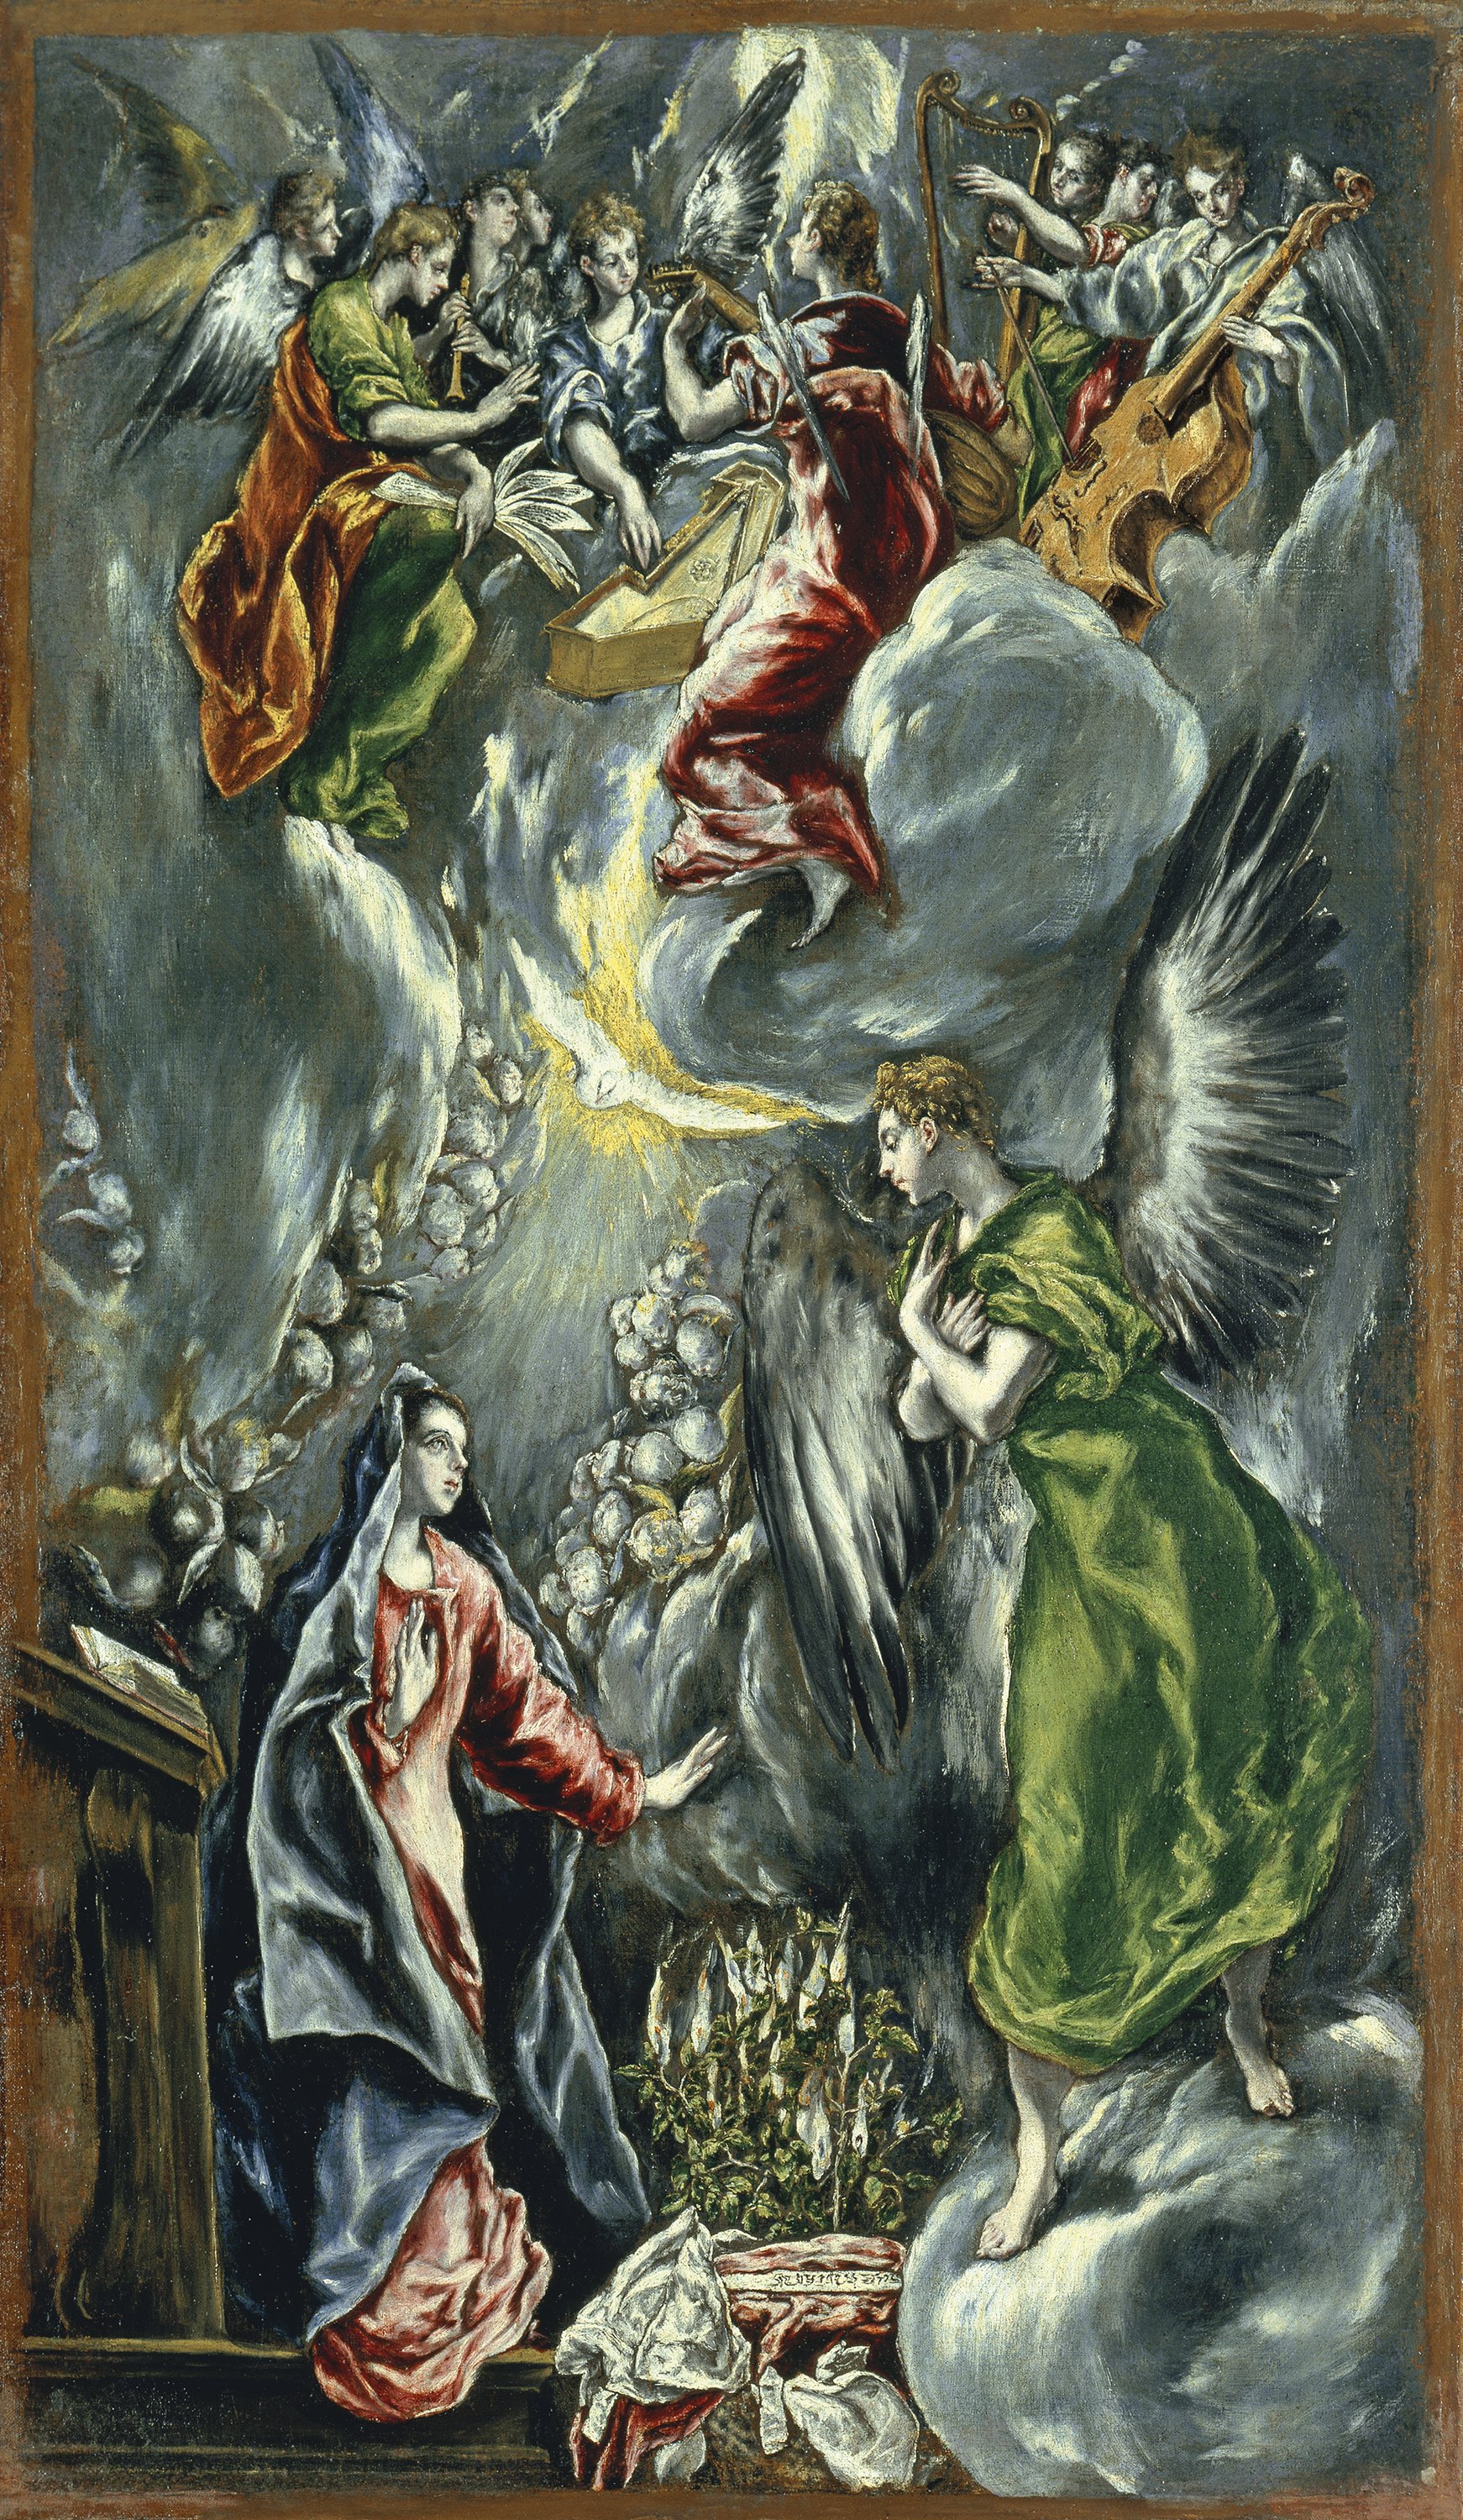 The Annunciation. La Anunciación, c. 1596-1600